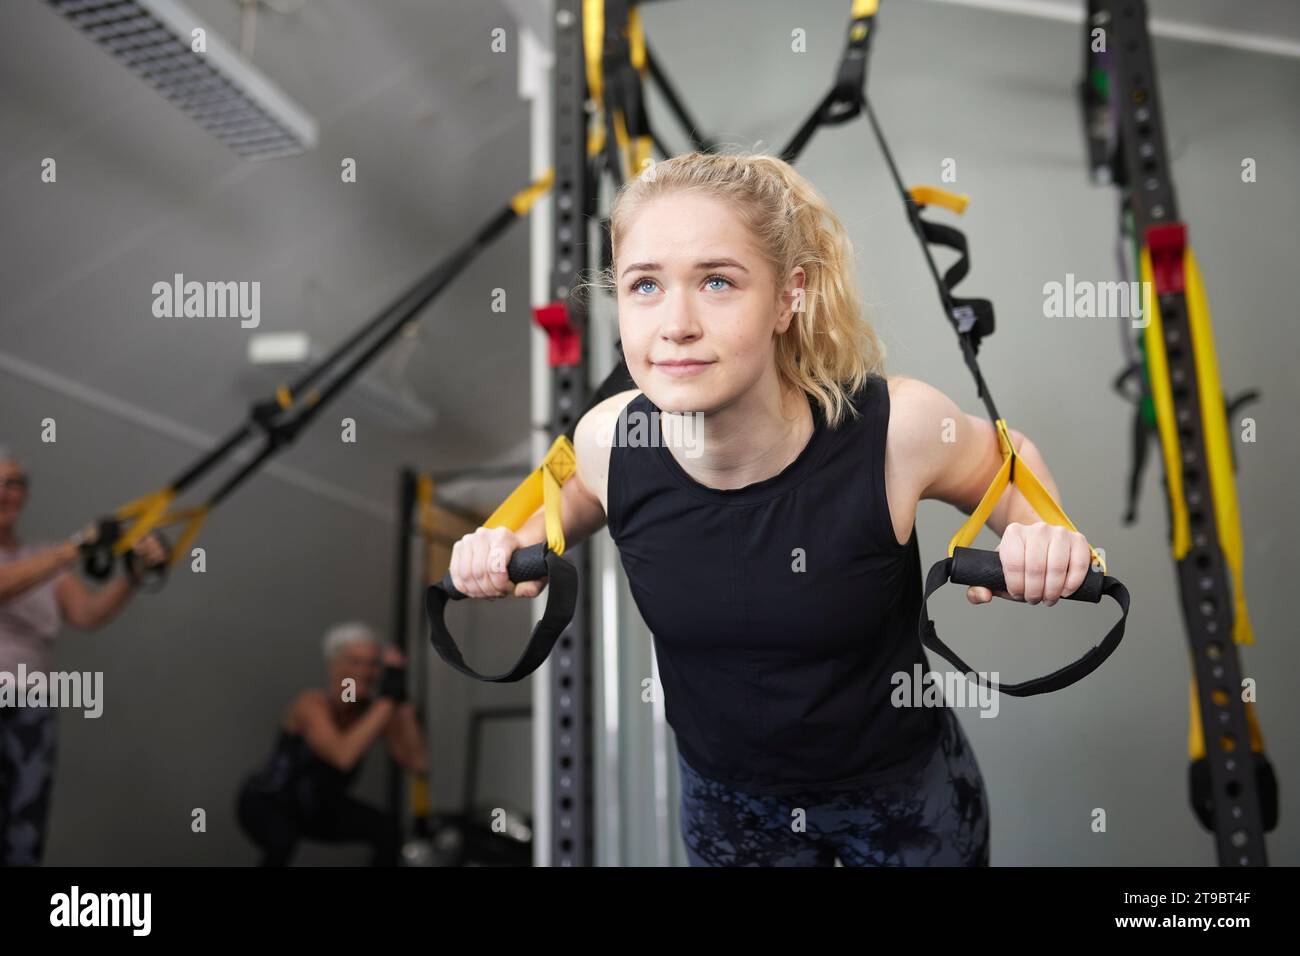 Junge Frau, die sich auf Turnringe im Gesundheitsclub stützt Stockfoto